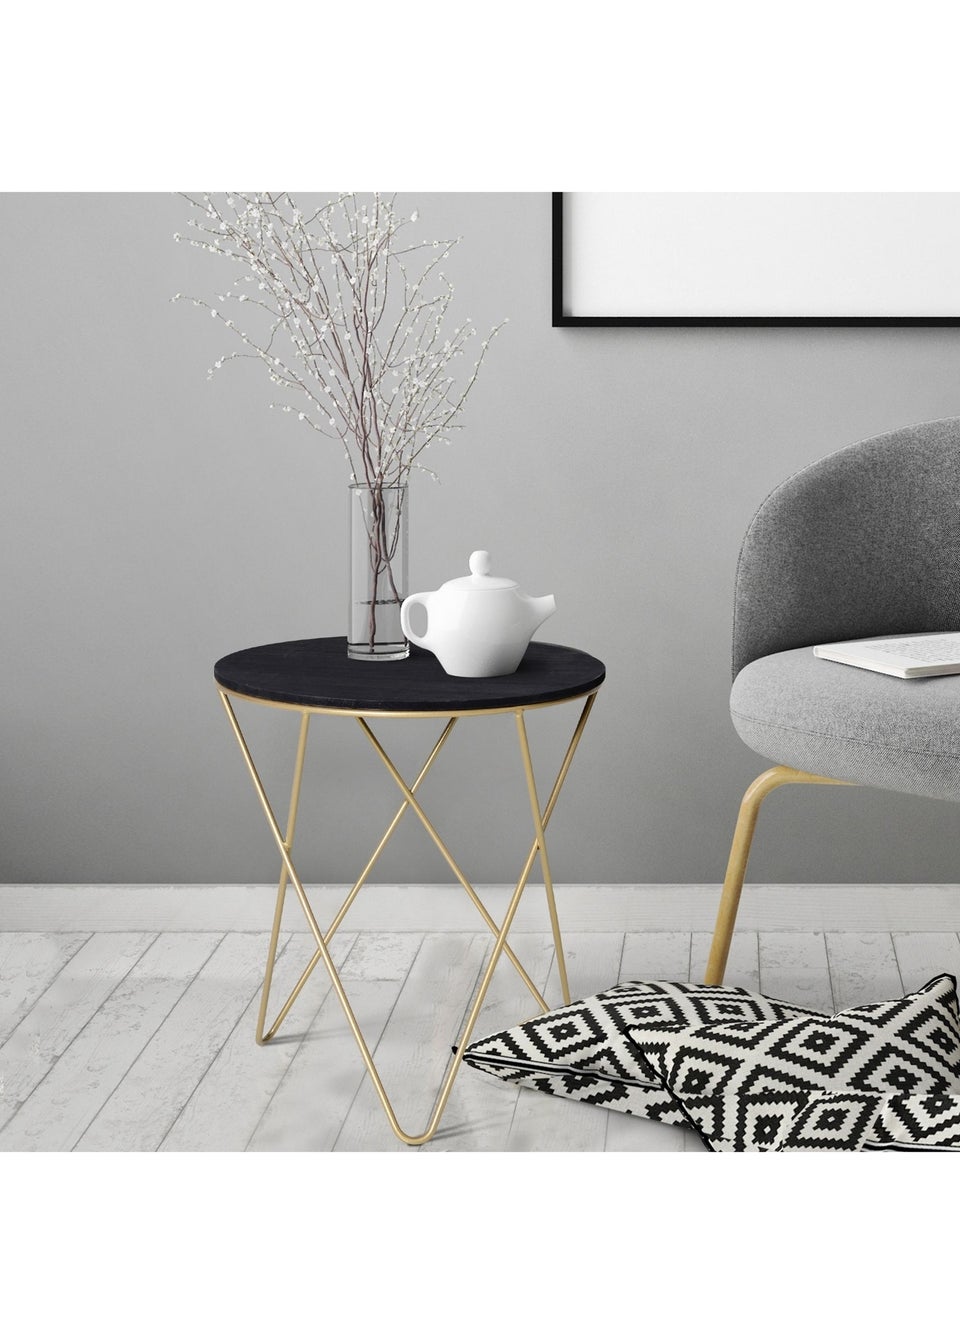 HOMCOM Black Round Coffee Table Sofa End Side (43cm x 43cm x 48cm)